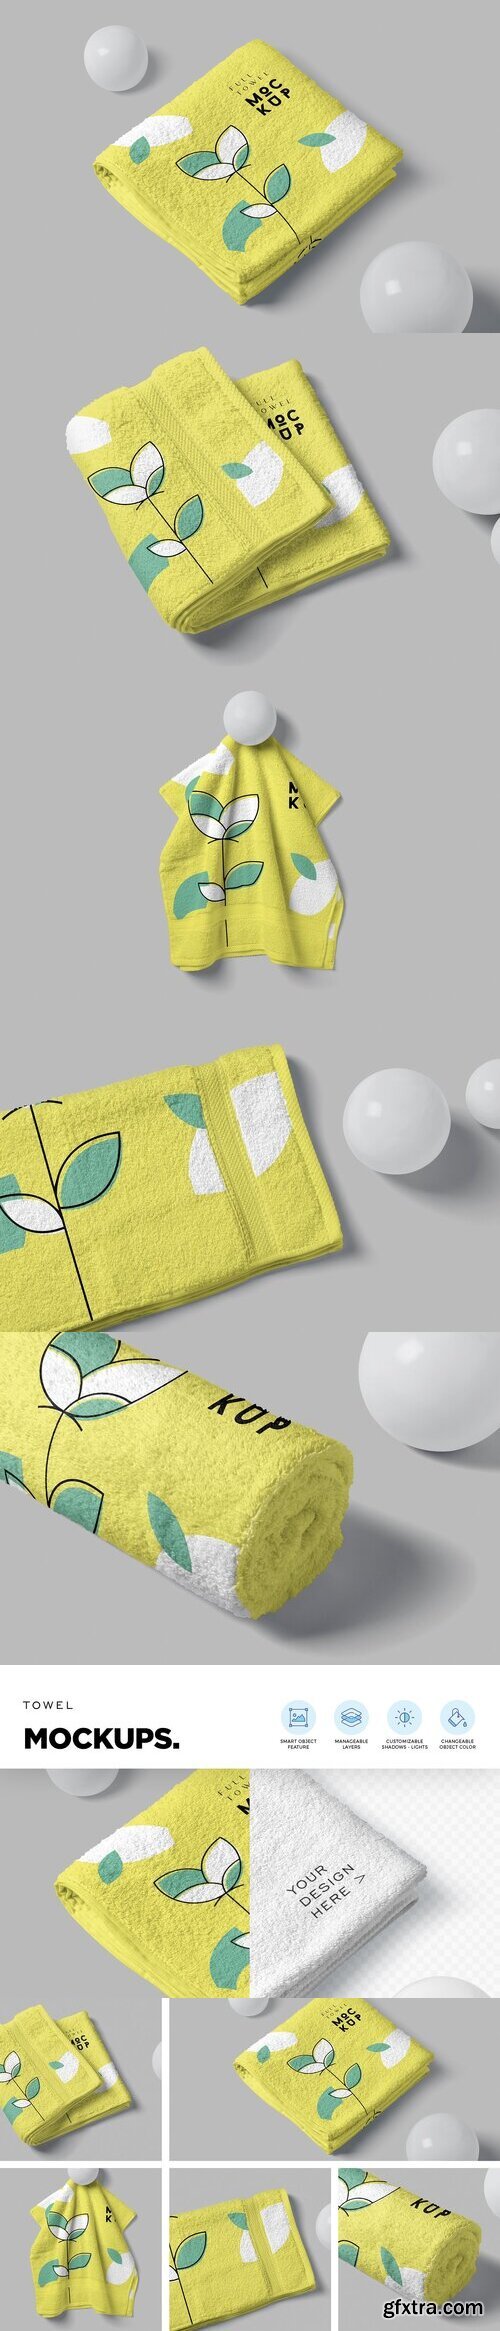 CreativeMarket - Elegant Full Towel Mockups 6707238